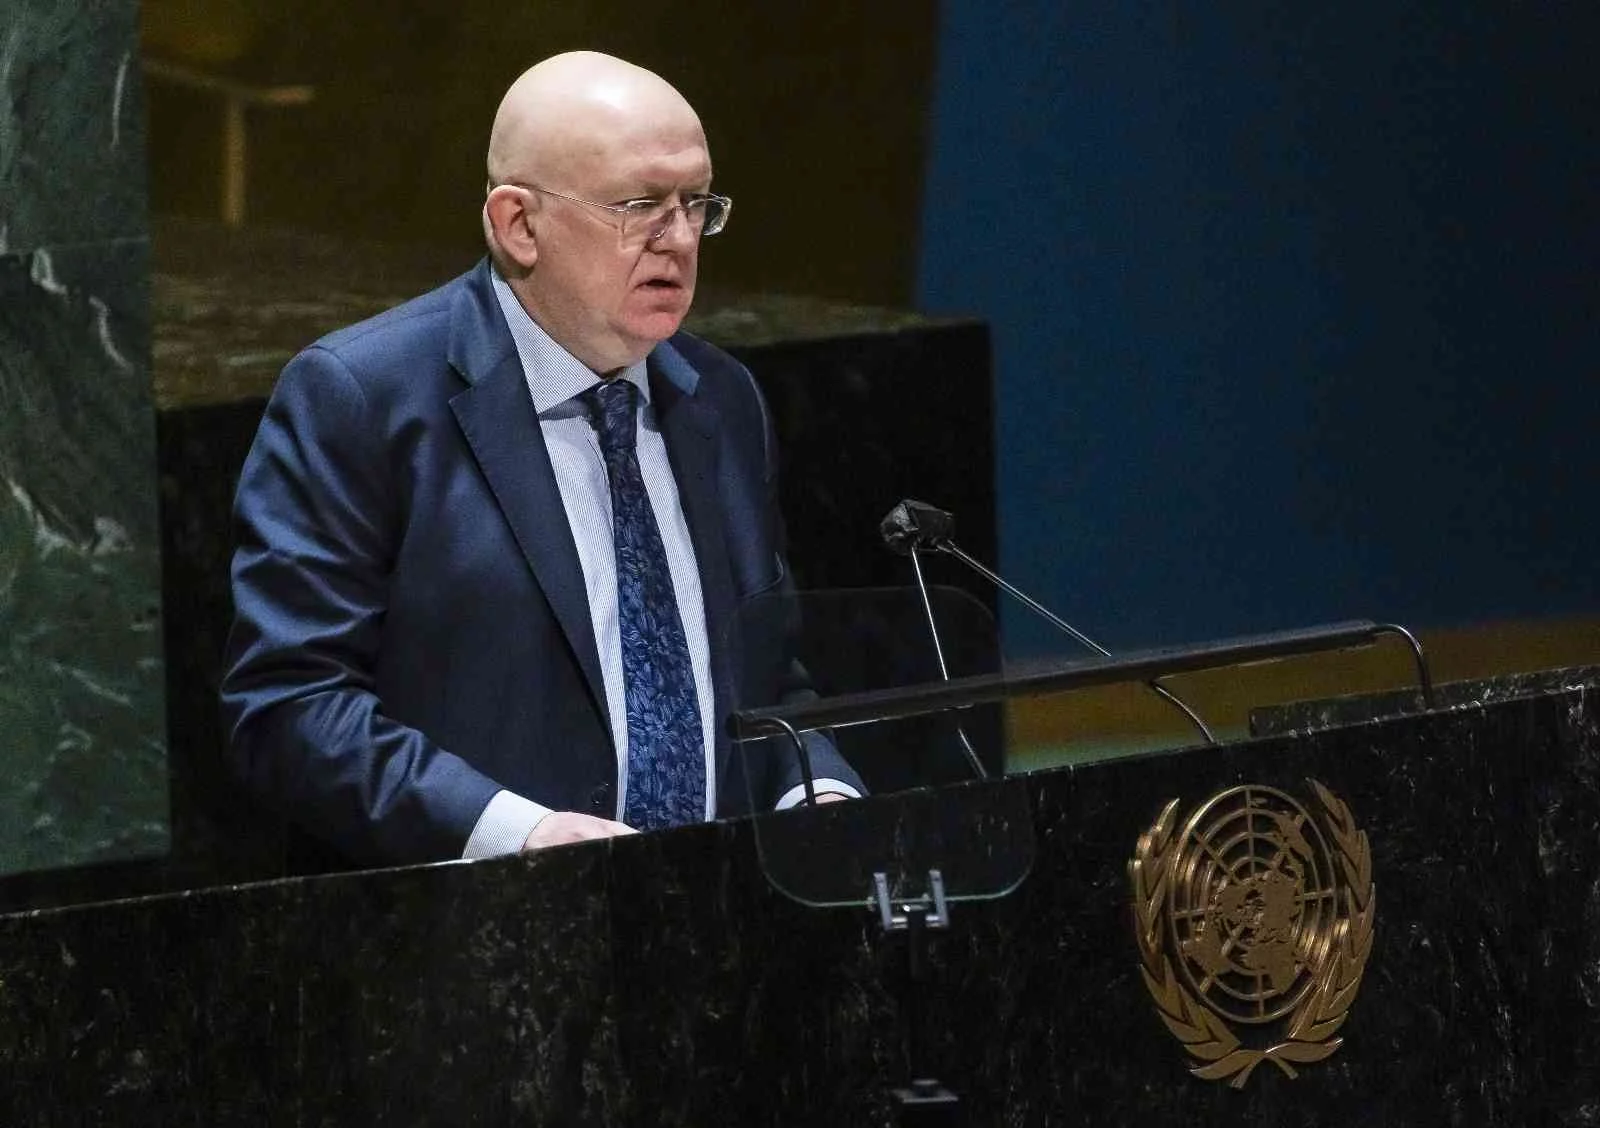 Rusyanın BM Daimi Temsilcisi Nebenzya: Ukrayna krizinin asıl sebebi kendi eylemleridir